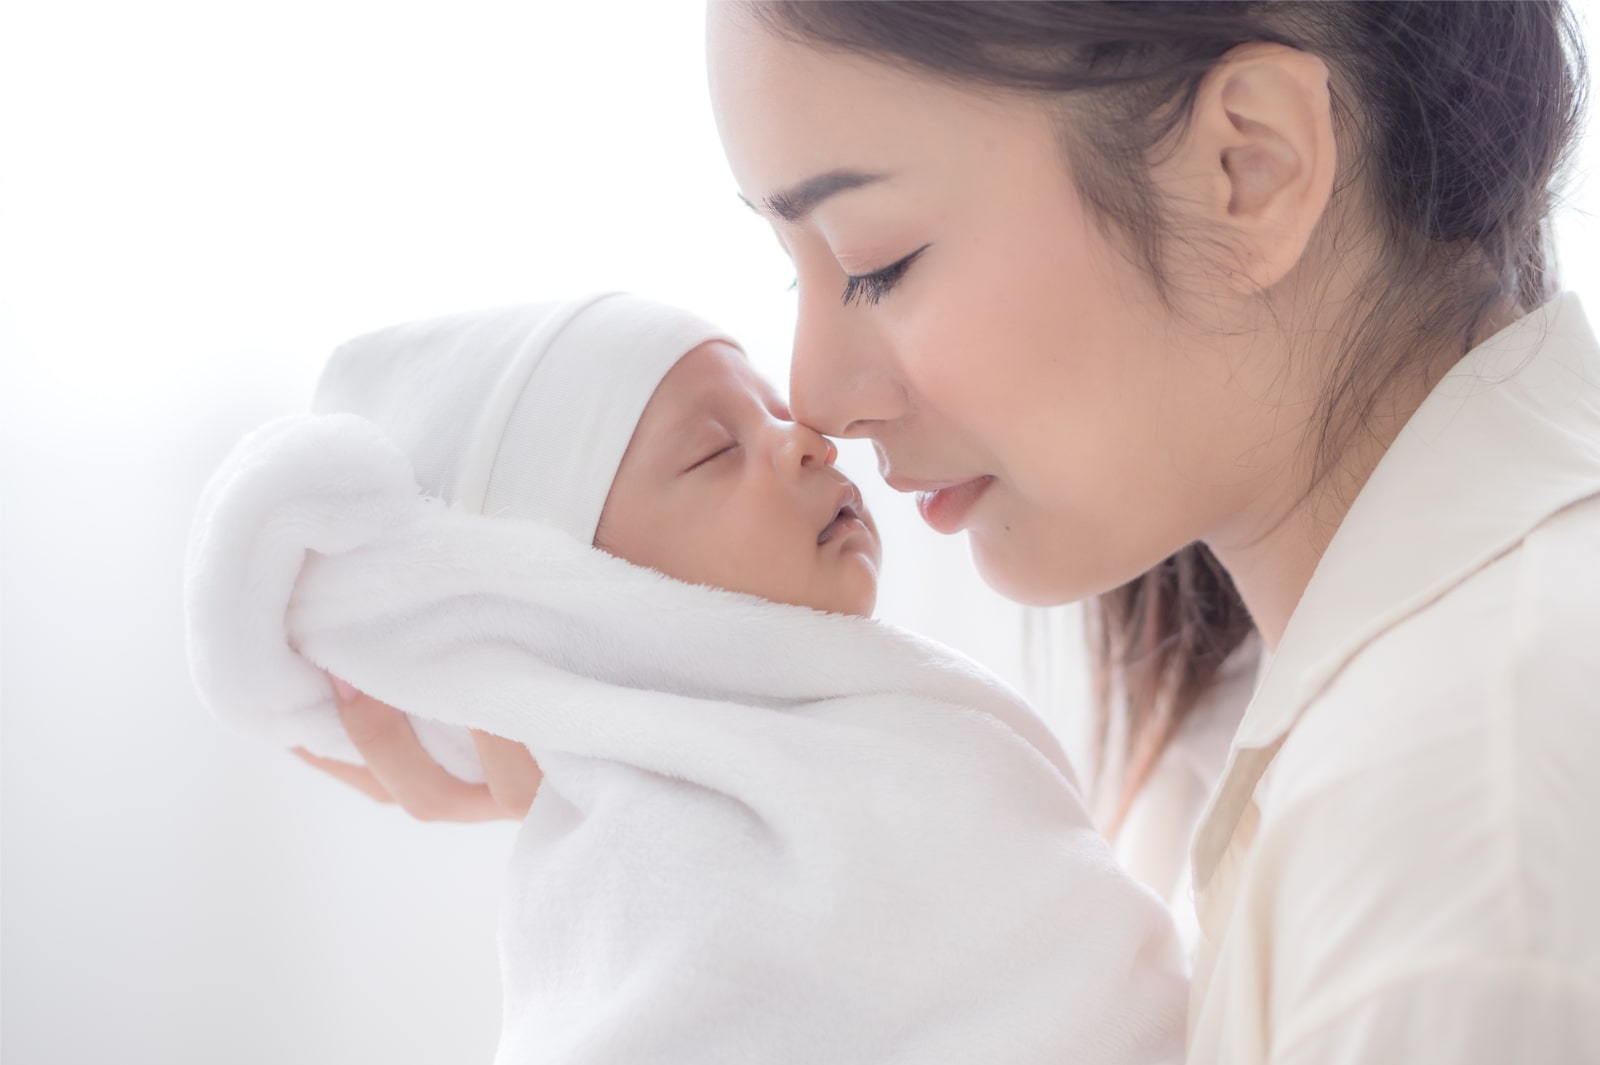 Gentle Birth, Proses Persalinan Membahagiakan untuk Ibu dan Bayi Tanpa Takut